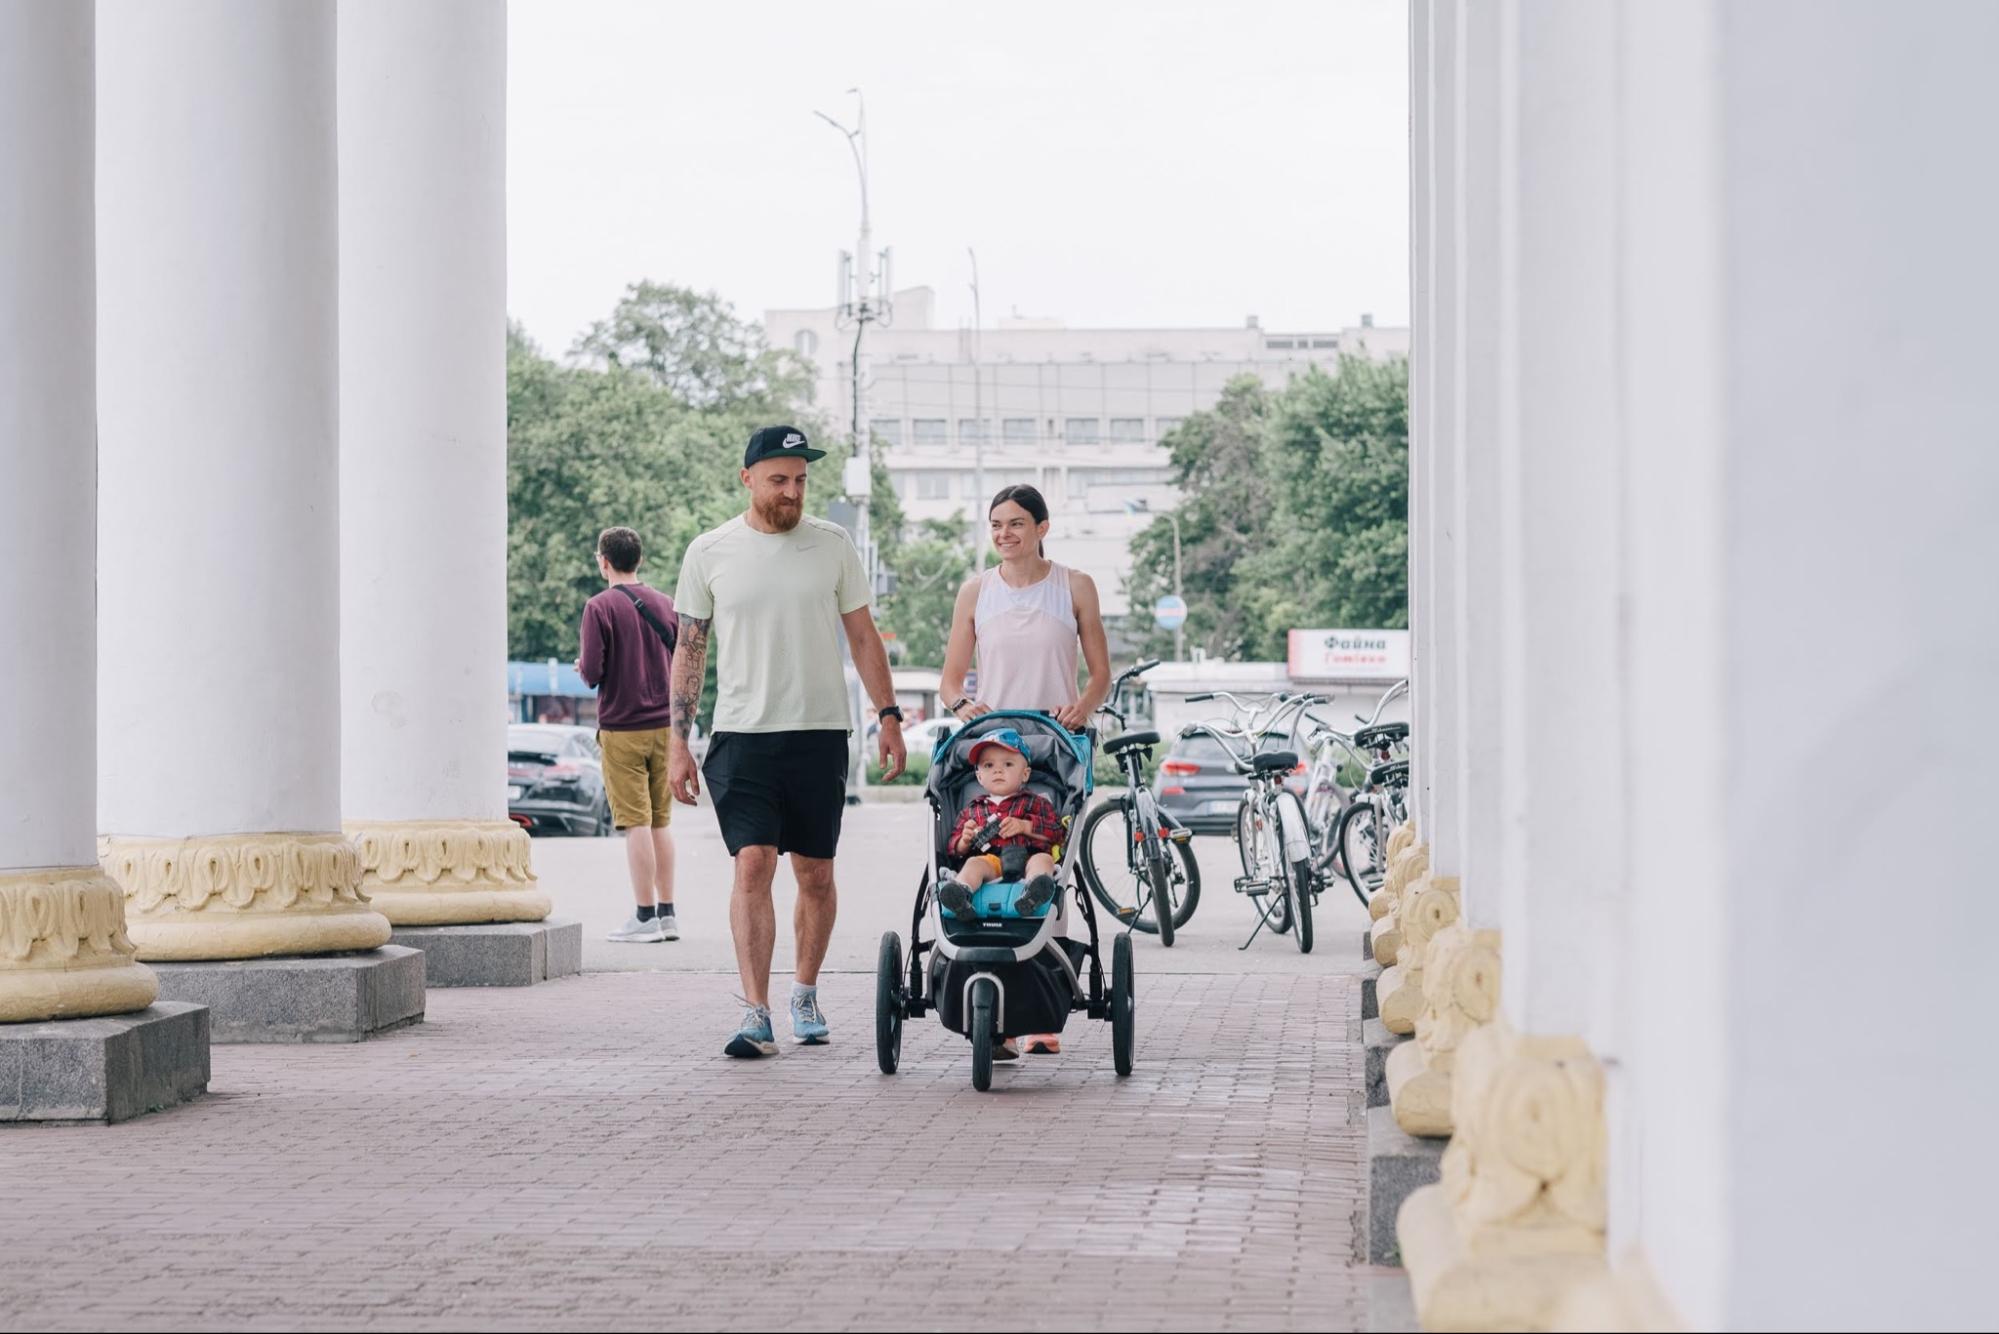 Де в Києві зручно бігати з дитячою коляскою